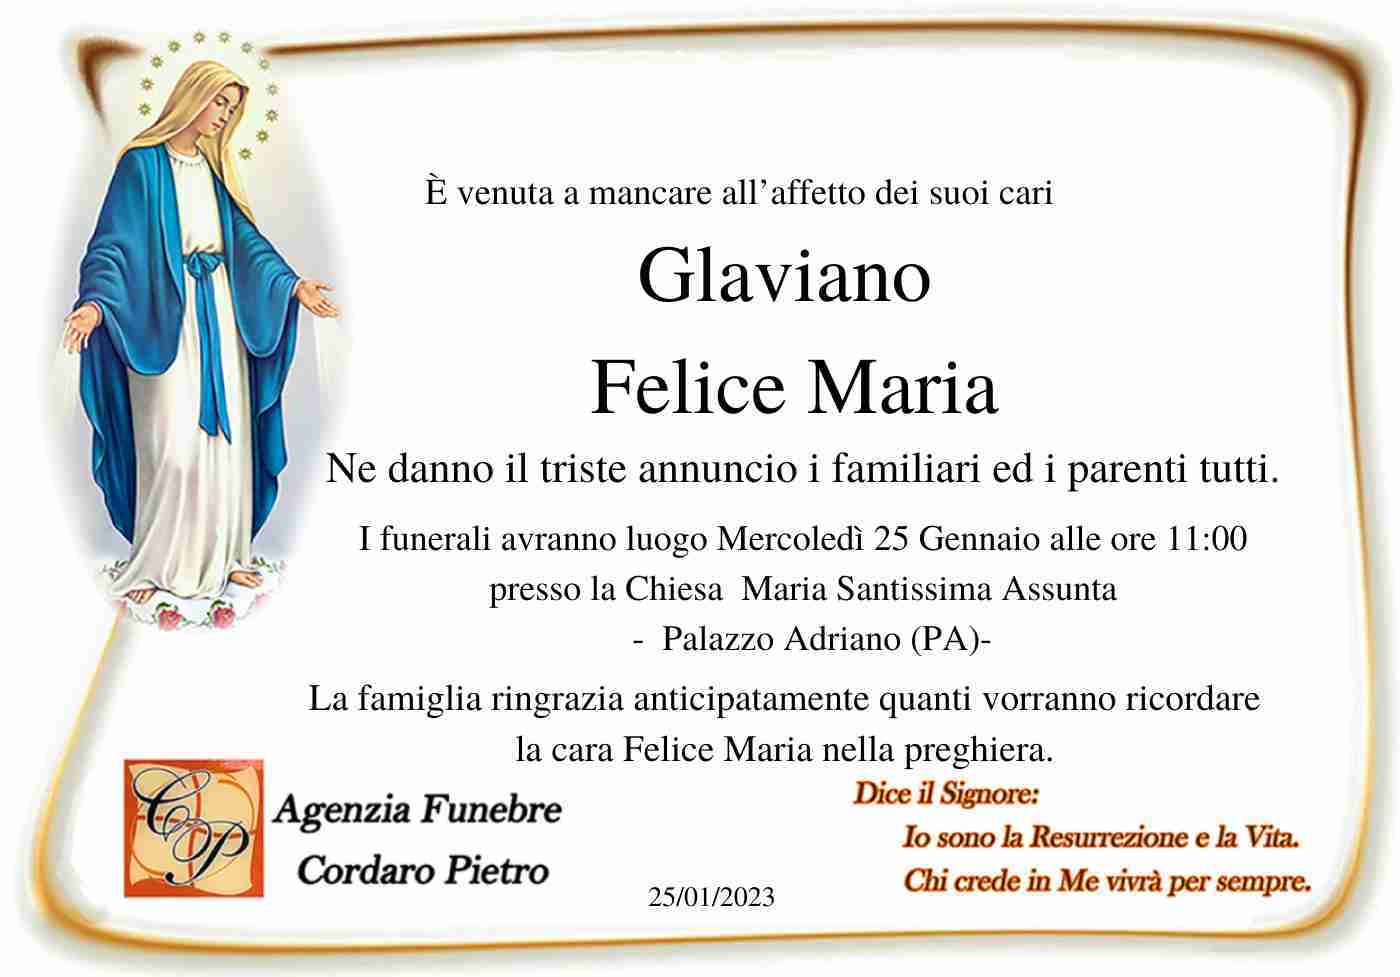 Glaviano Felice Maria